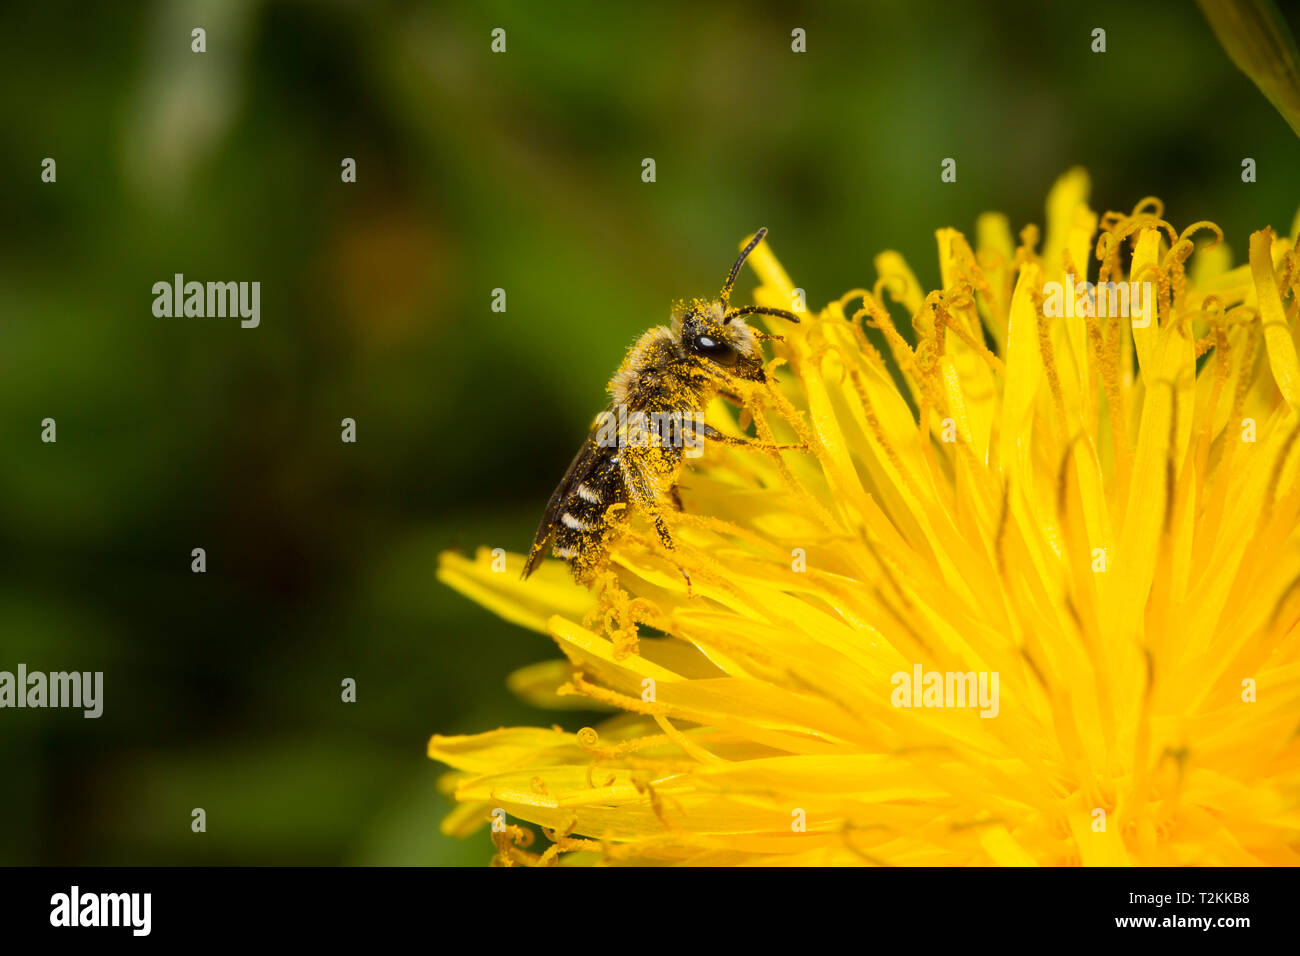 Sandbiene, Andrena, mining bee Stock Photo